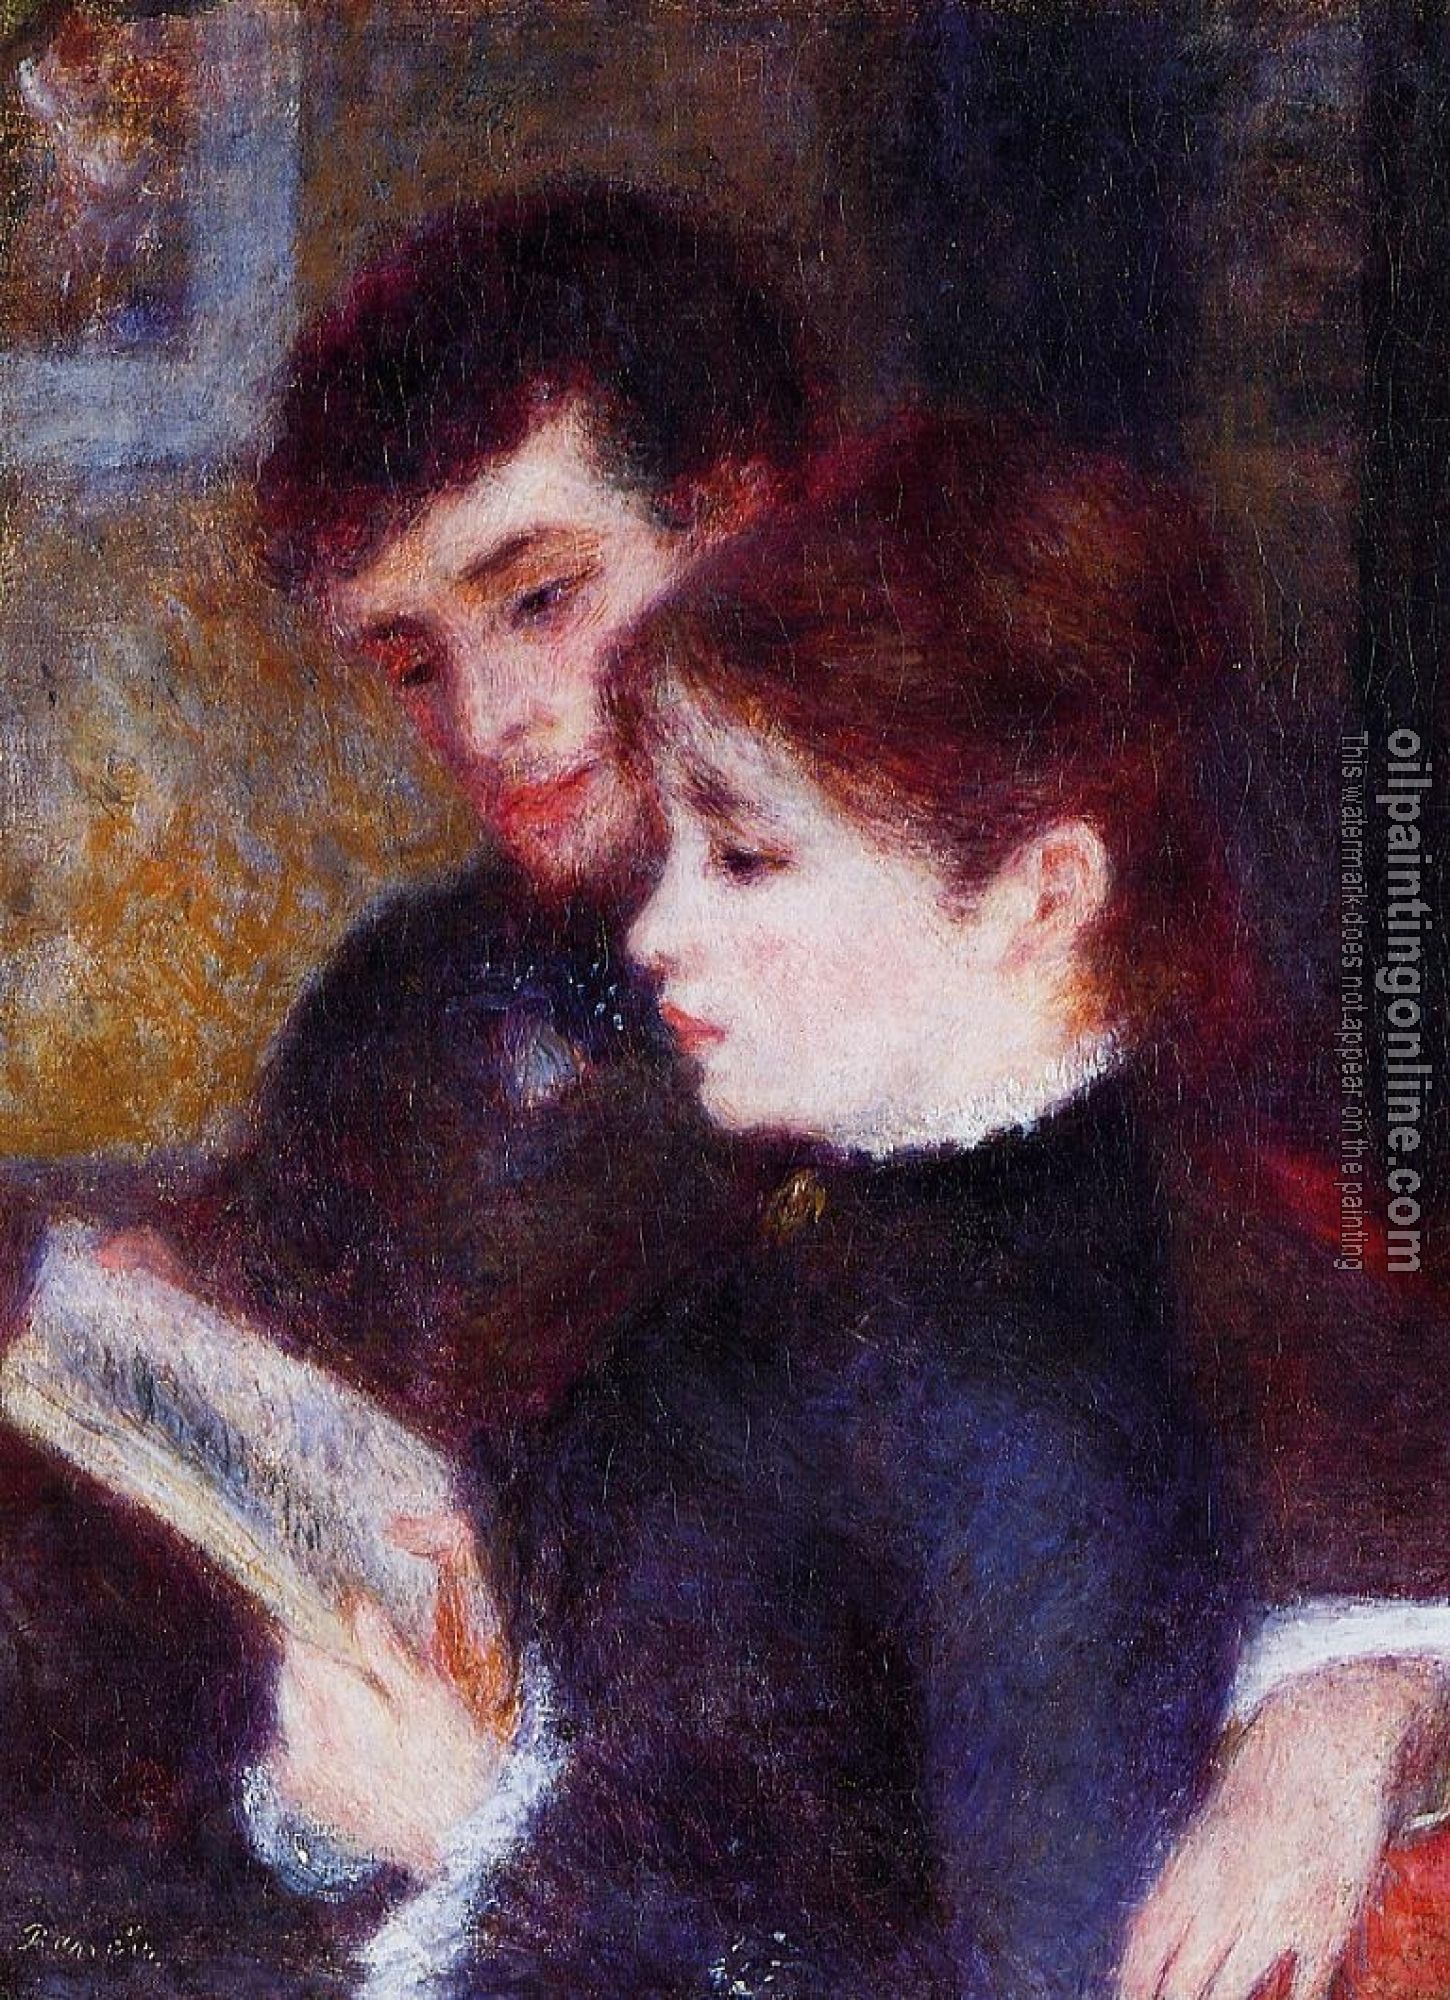 Renoir, Pierre Auguste - Reading Couple, Edmond Renoir and Marguerite Legrand